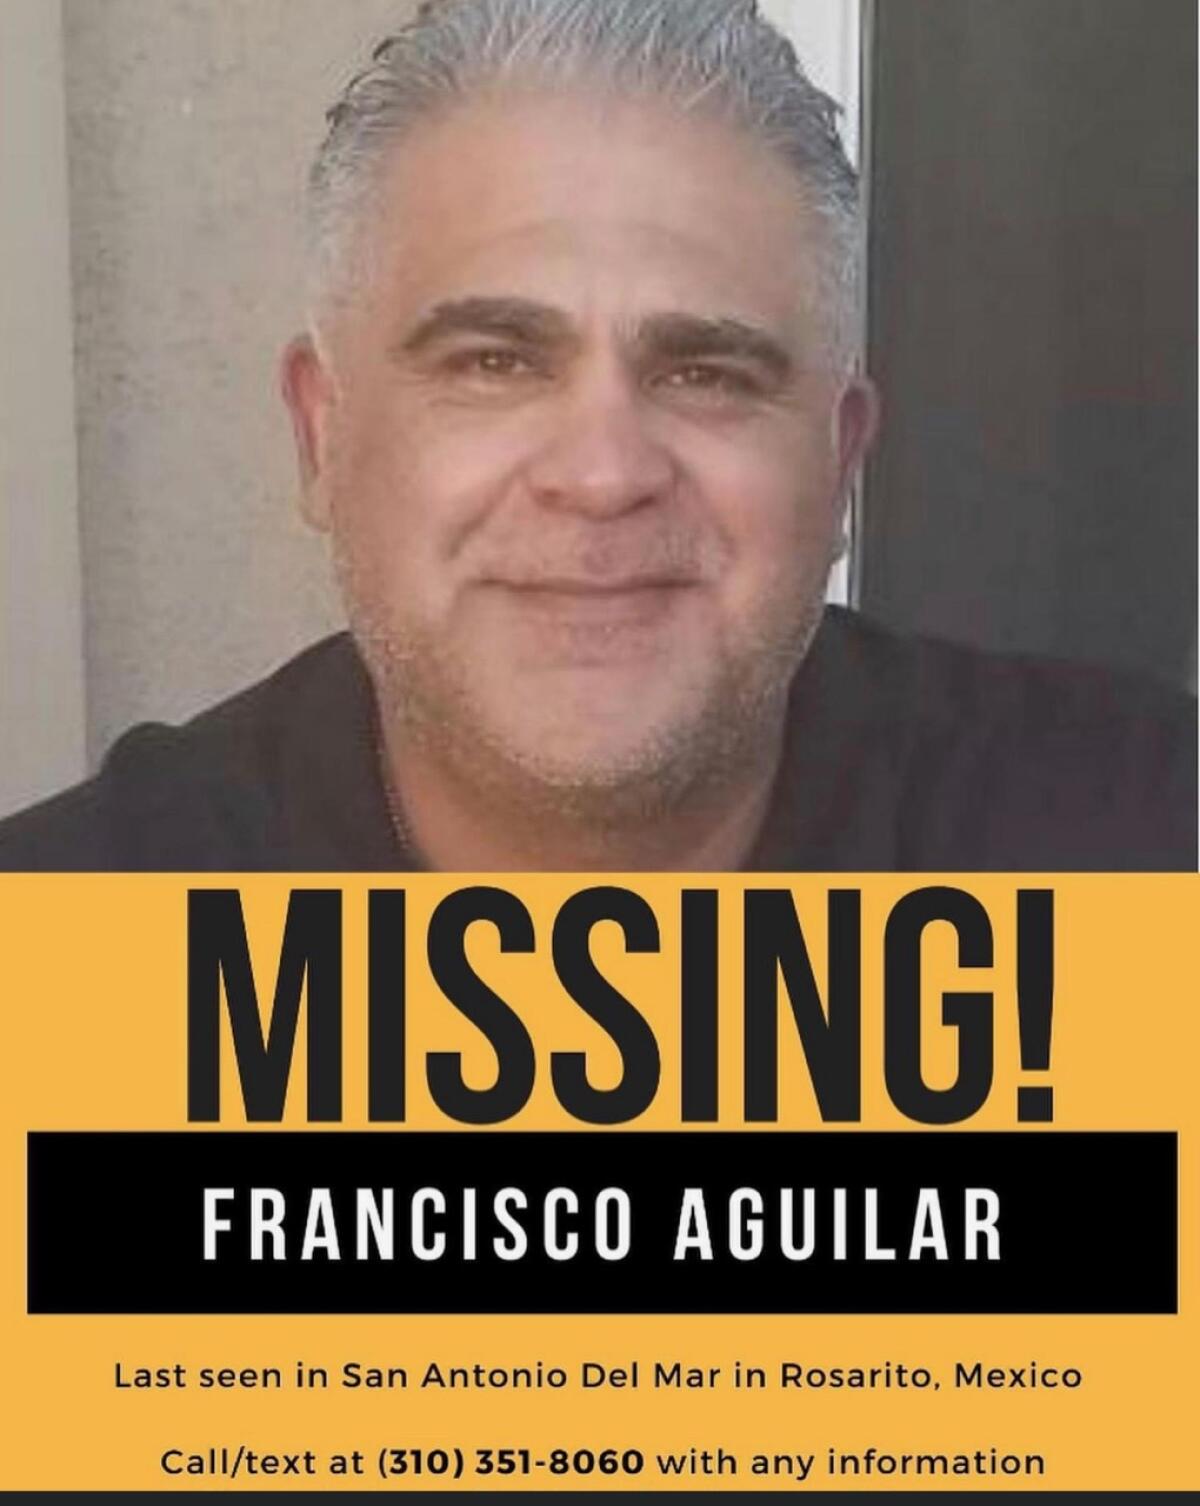 Volante con la foto del bombero desaparecido Francisco Aguilar